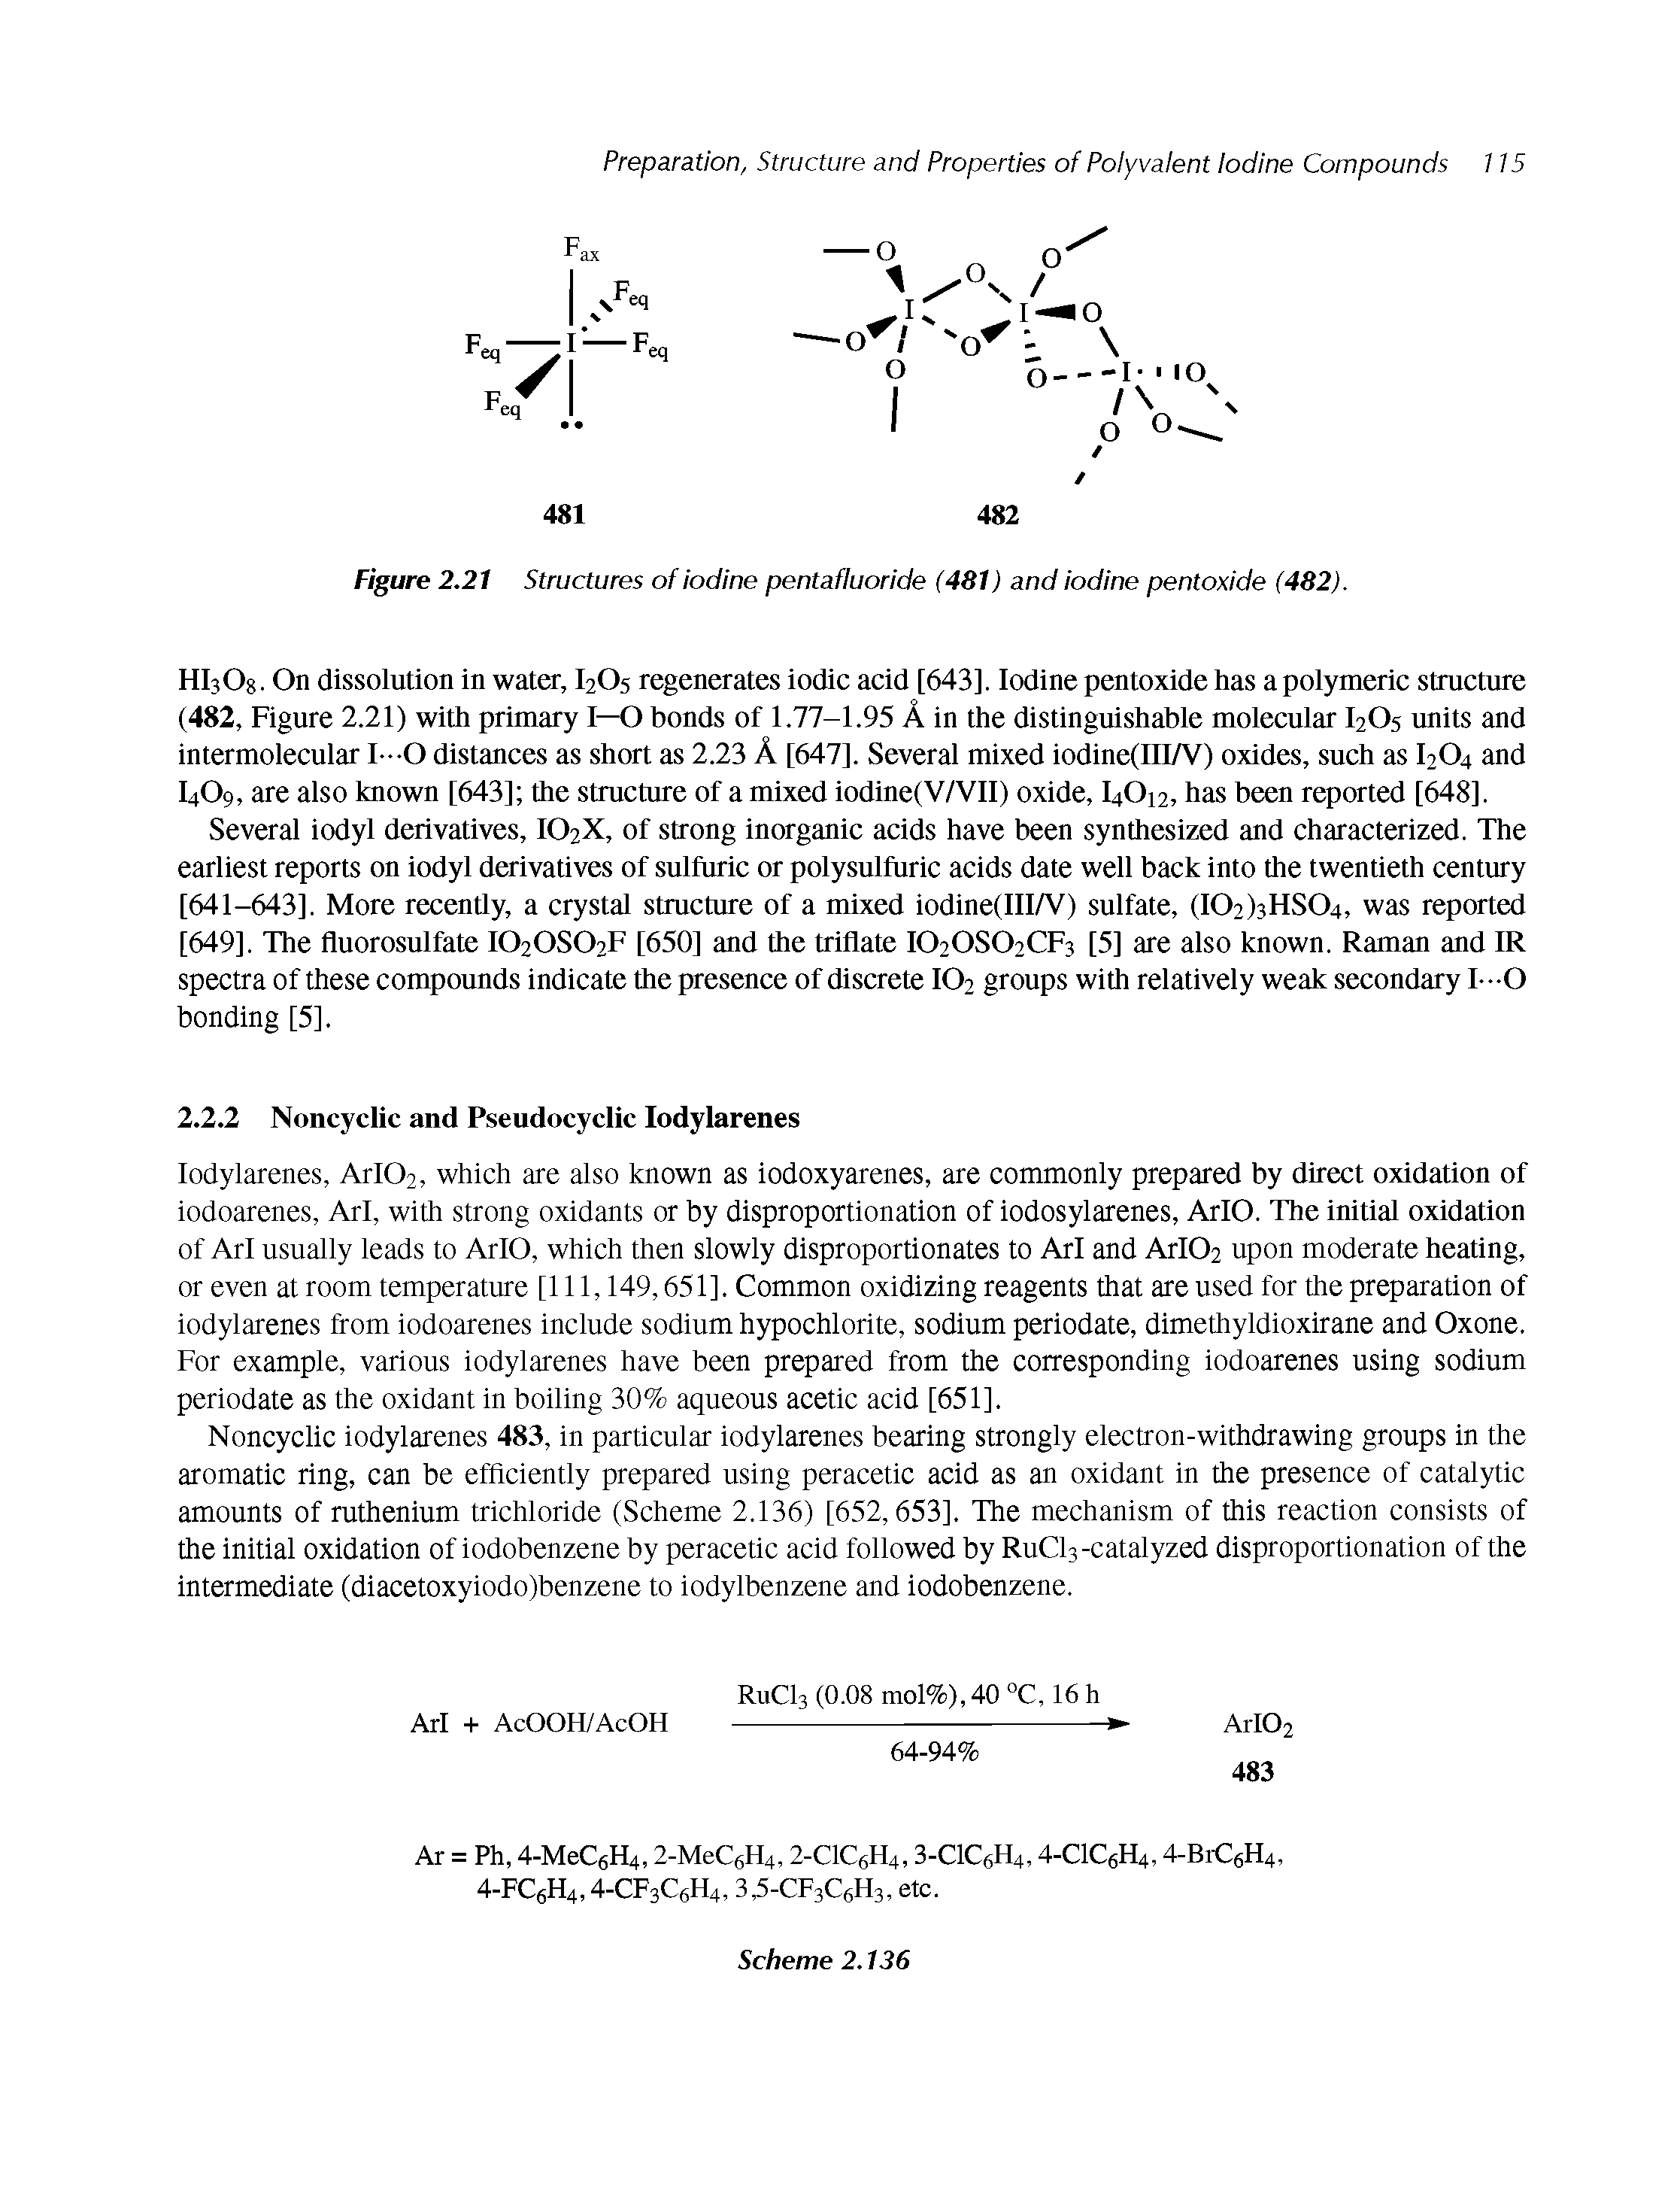 Figure 2.21 Structures of iodine pentafluoride (481) and iodine pentoxide (482).